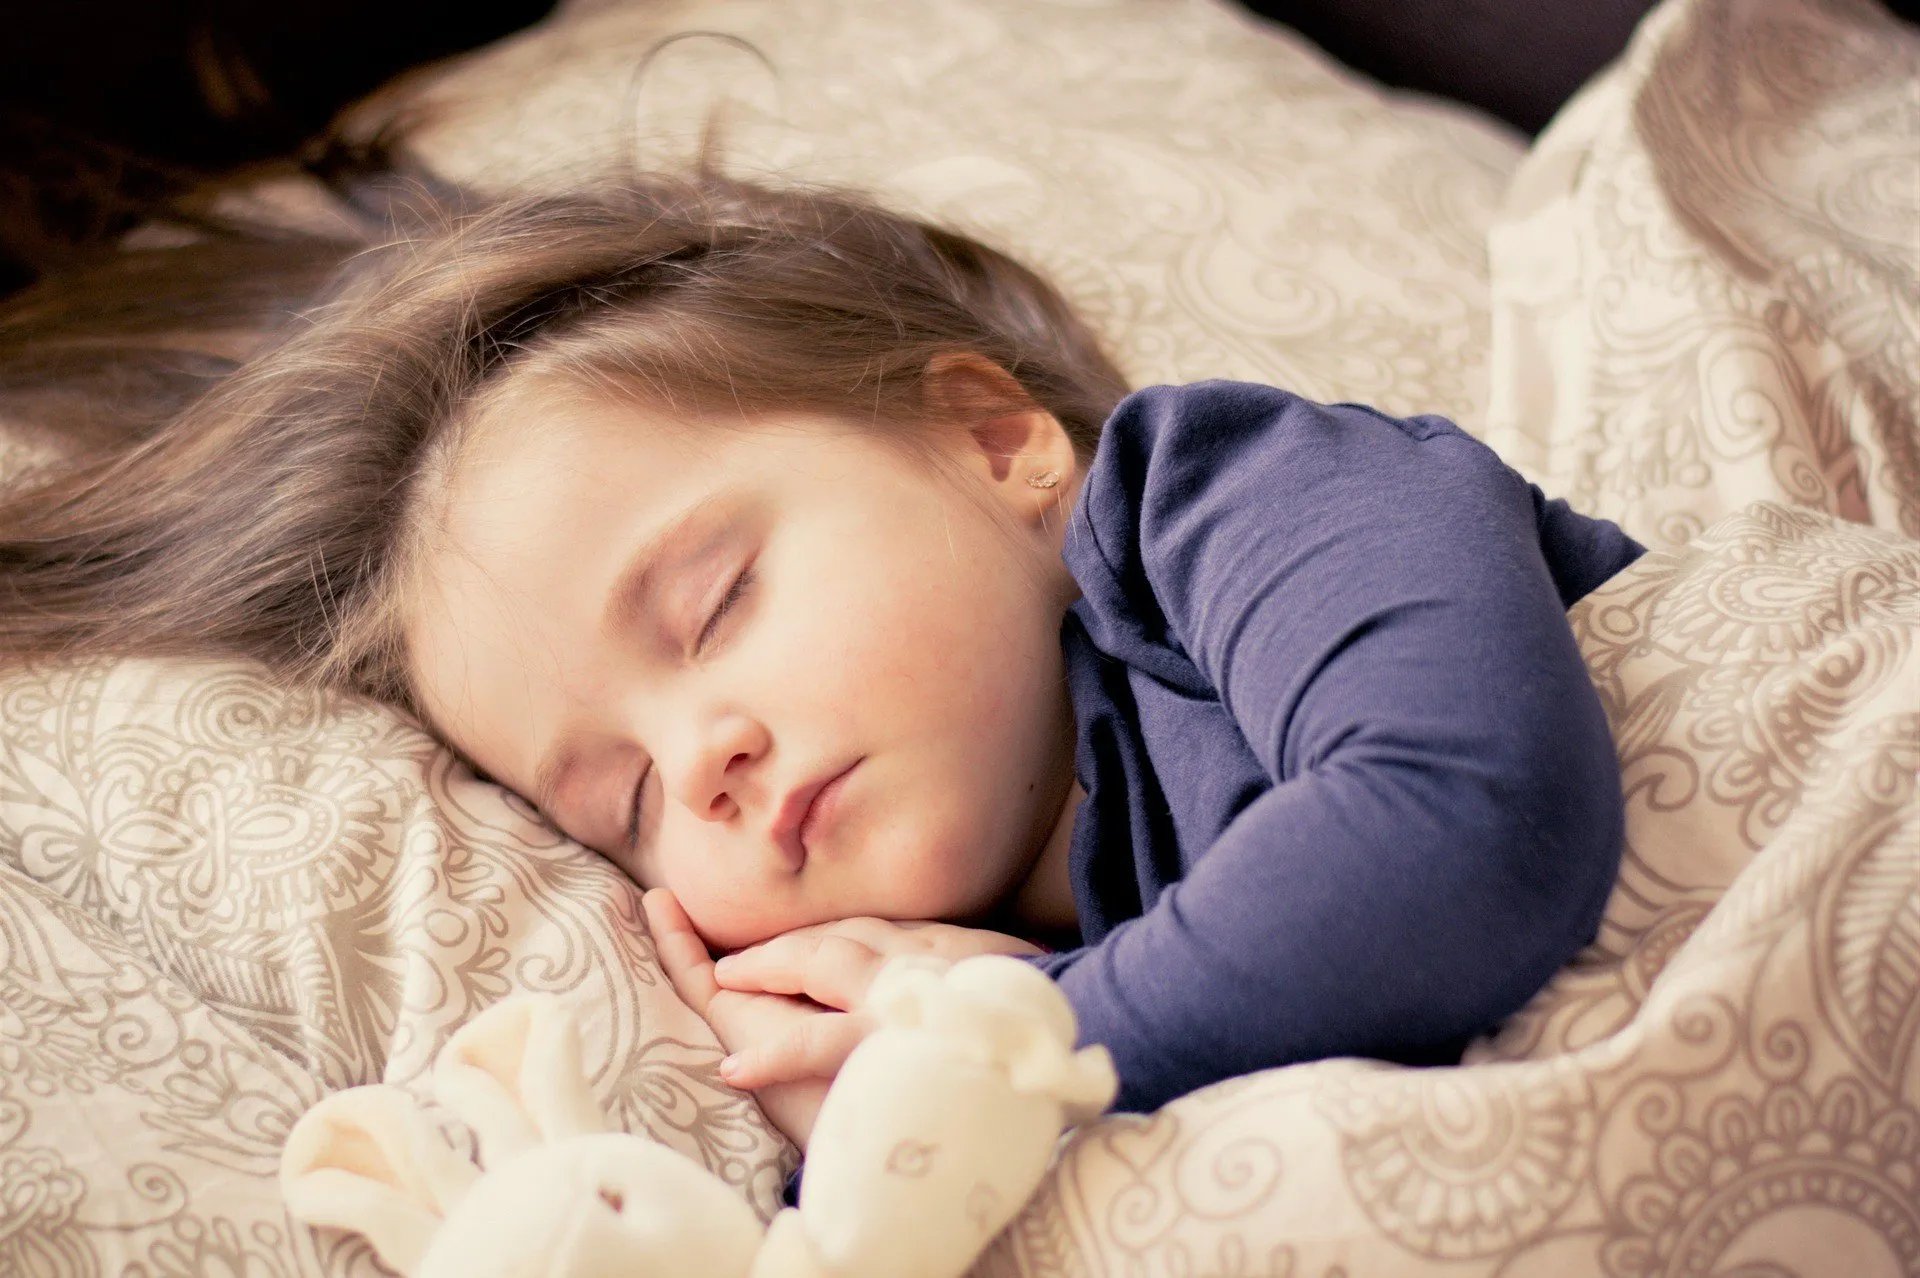 For better sleep, children’s bedrooms should be